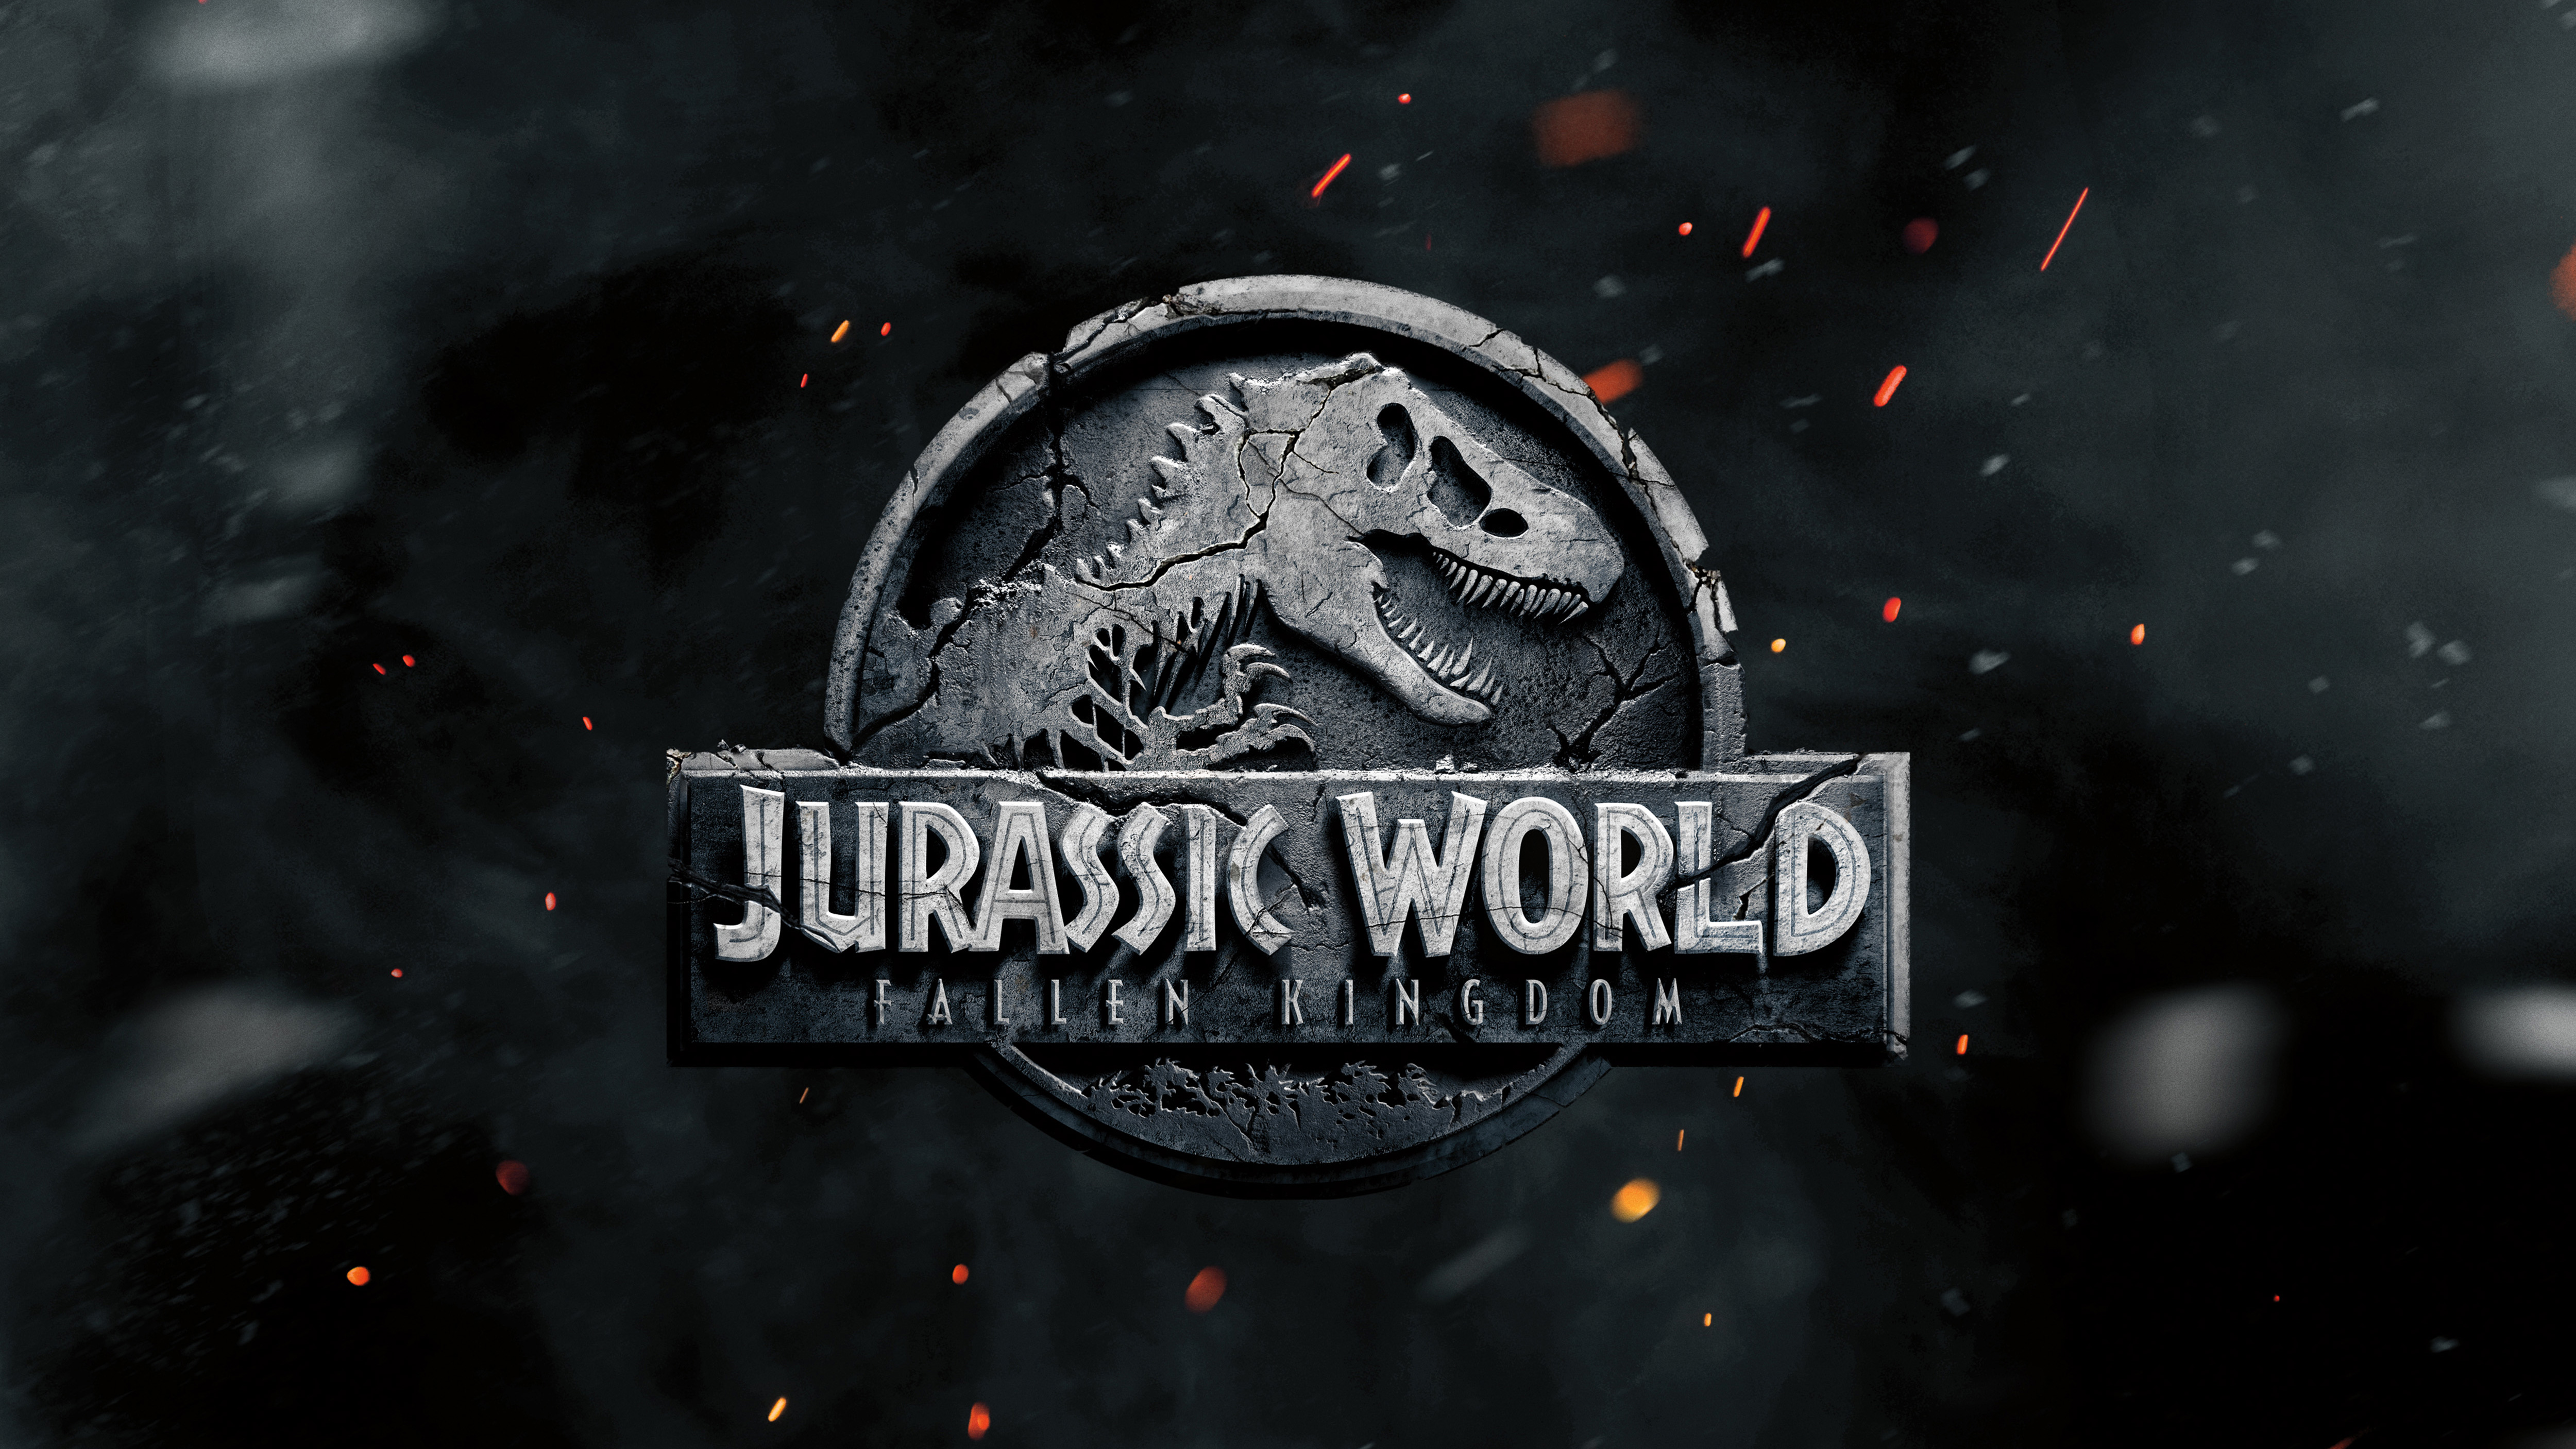 Featured image of post Jurassic World Wallpaper Hd 1920X1080 Jurassic world fallen kingdom 2018 movies 4k hd 5k 8k